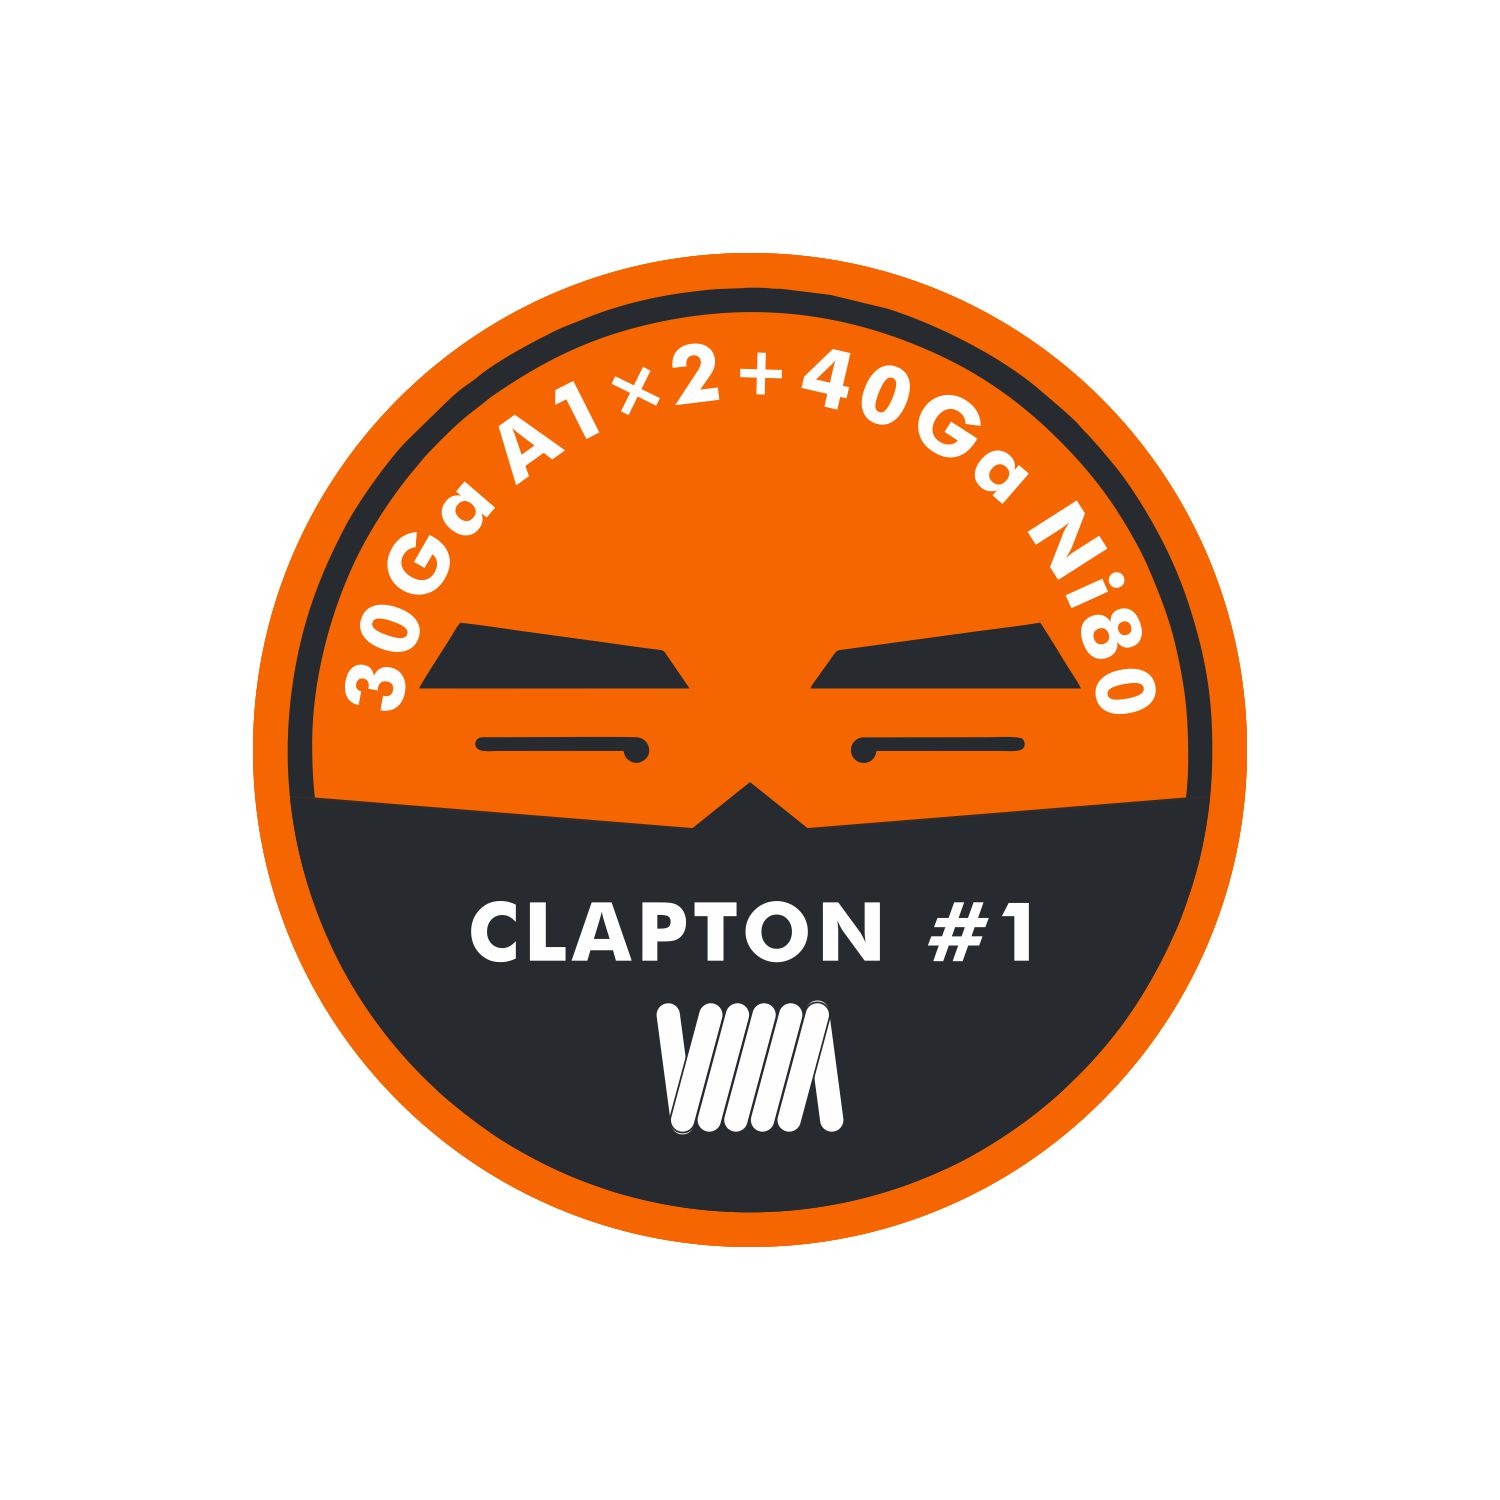 CLAPTON WIRE #1